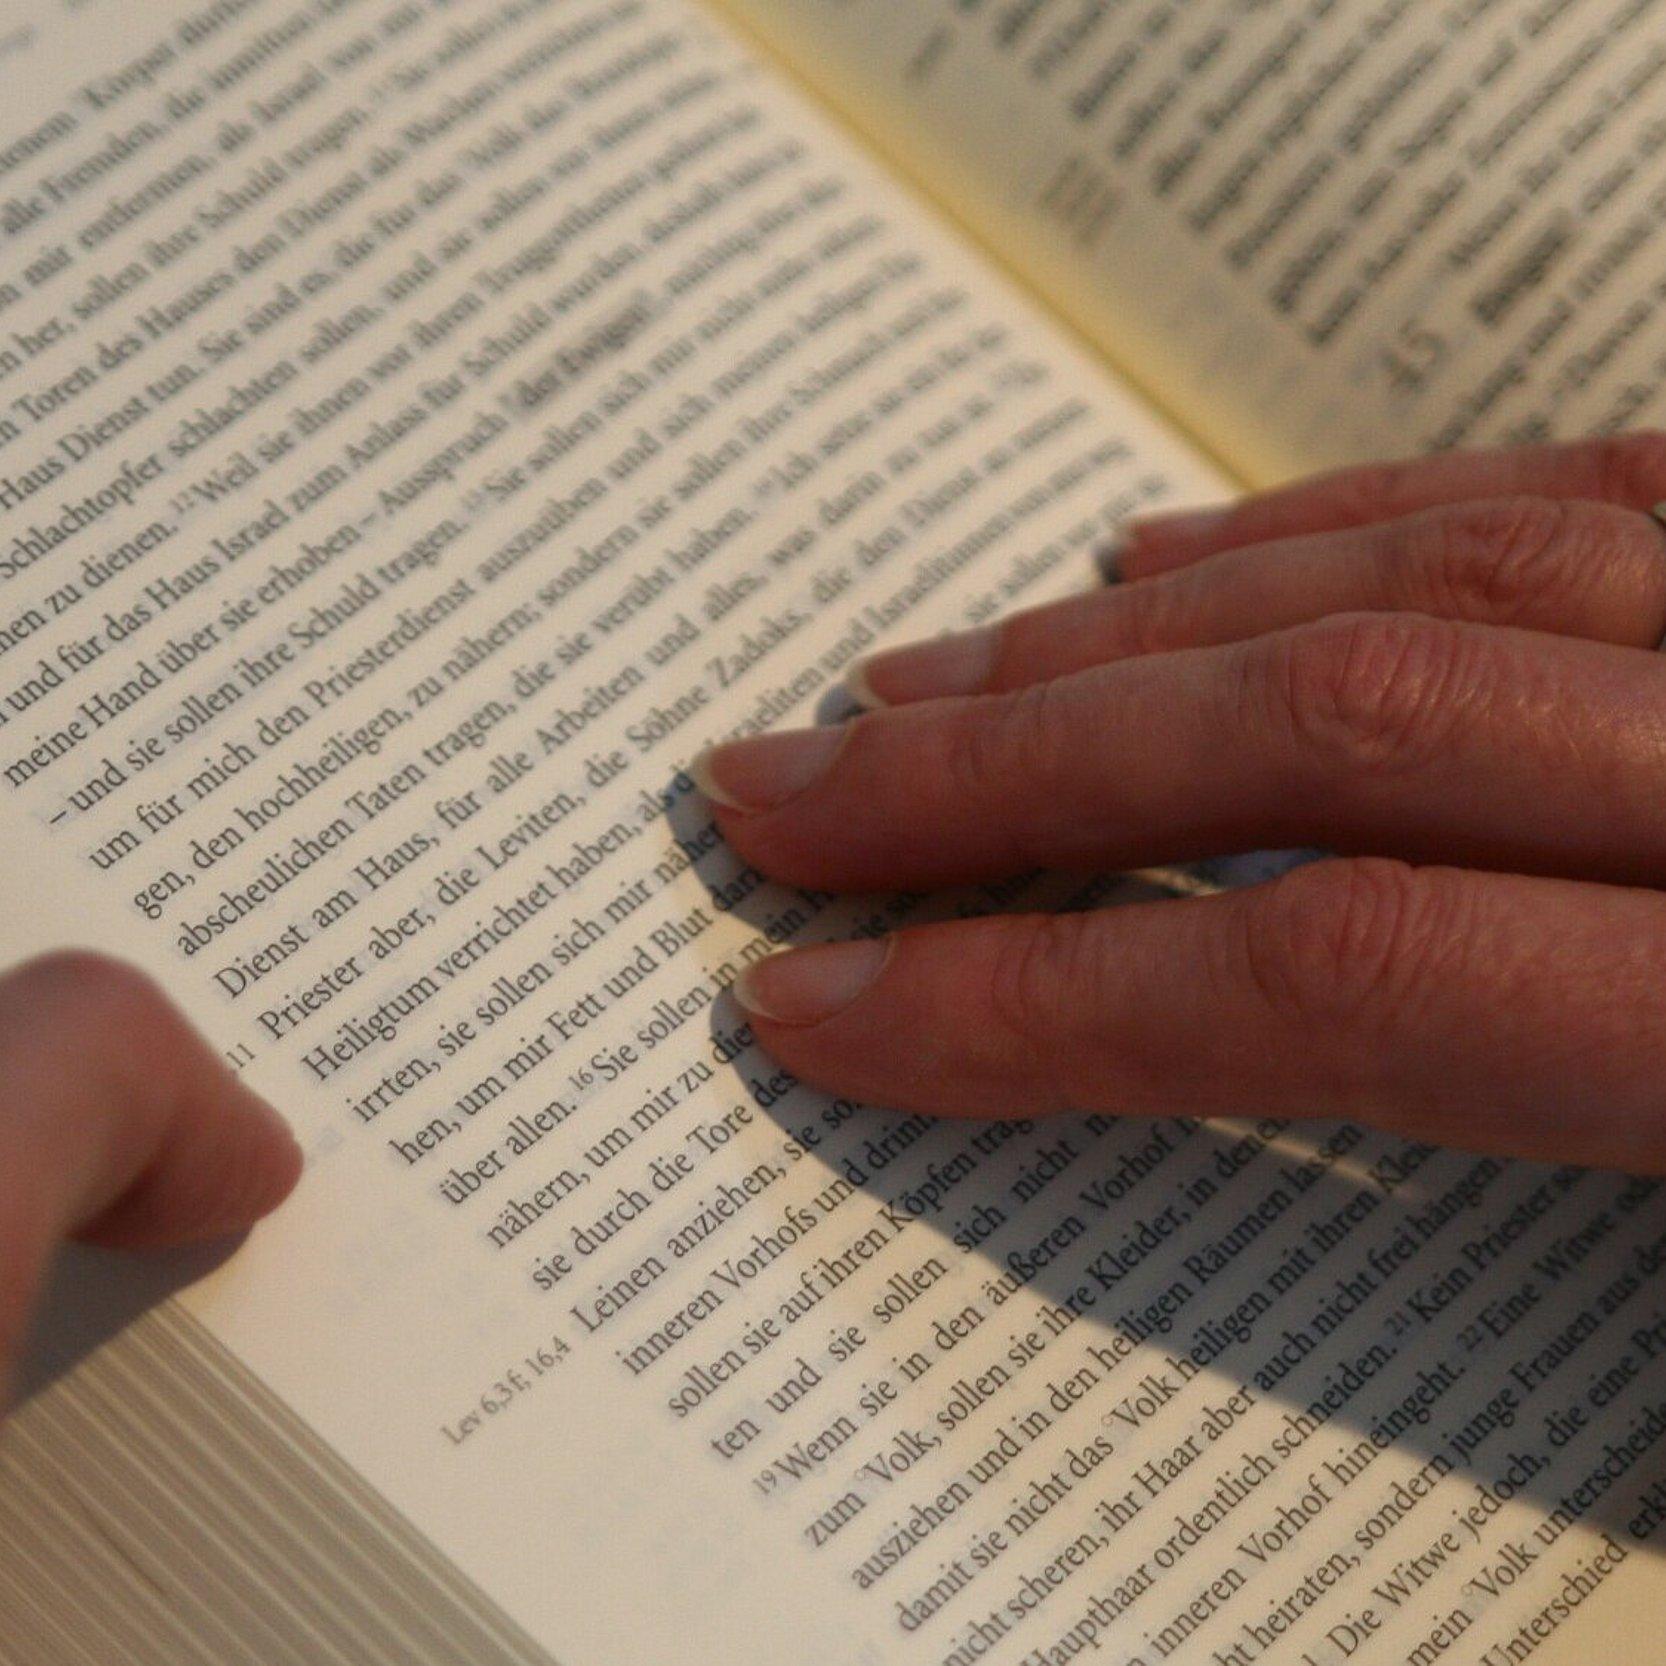 Eine Hand ruht auf einer aufgeschlagenen Bibel und verharrt auf einem Satz.